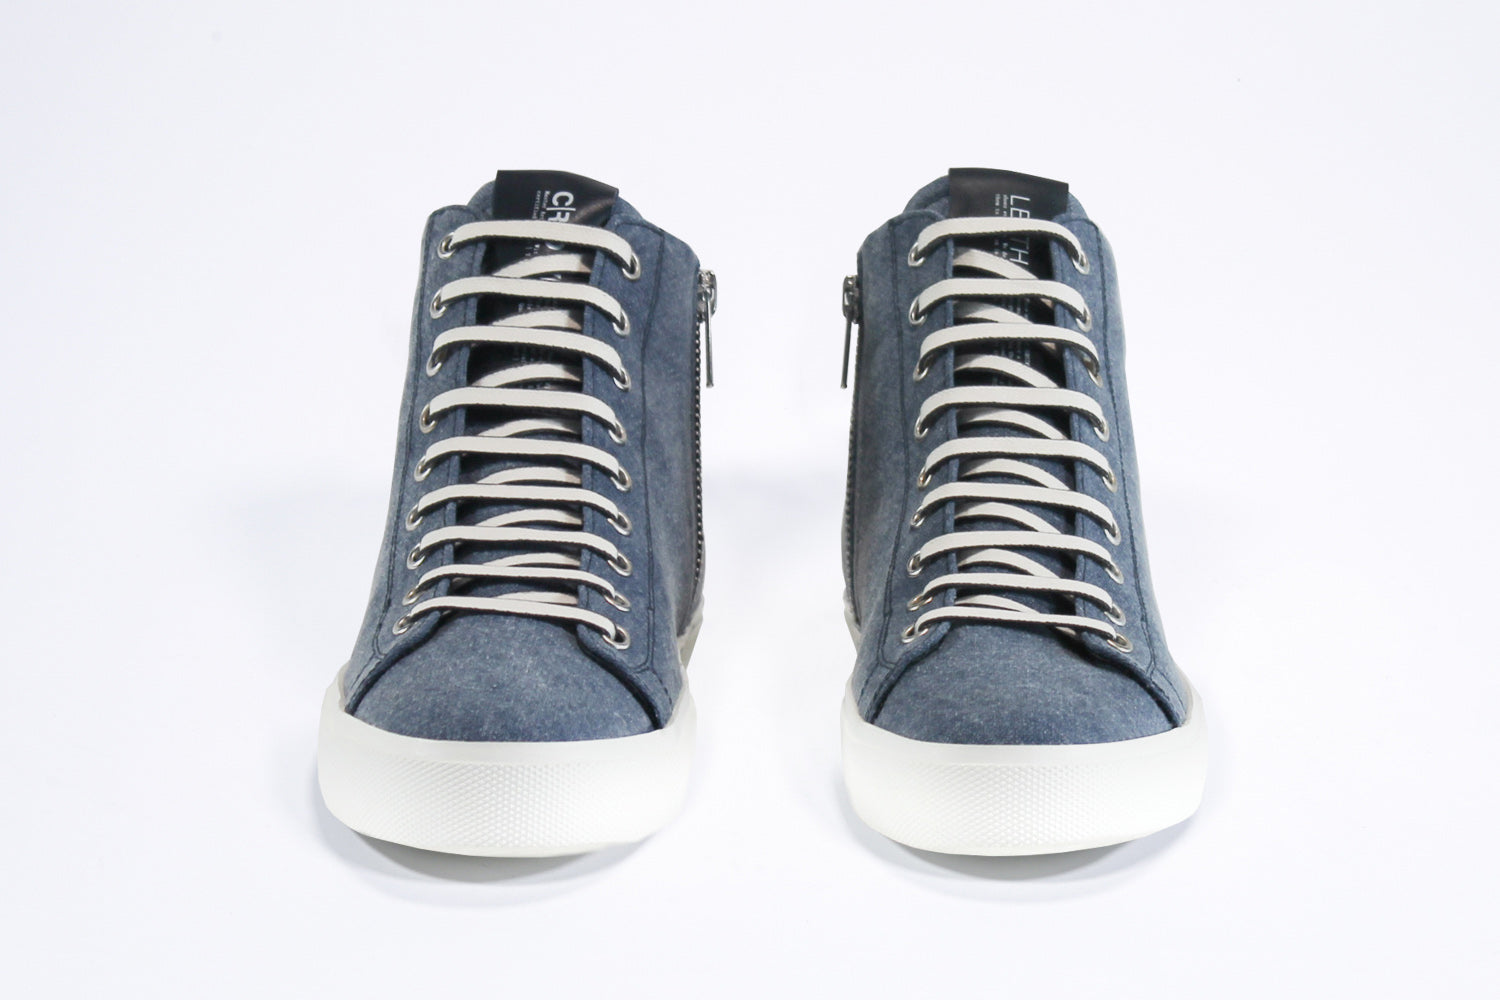 Vista frontale del modello mid top sneaker con tomaia in tela e pelle blu denim, zip interna e suola bianca.